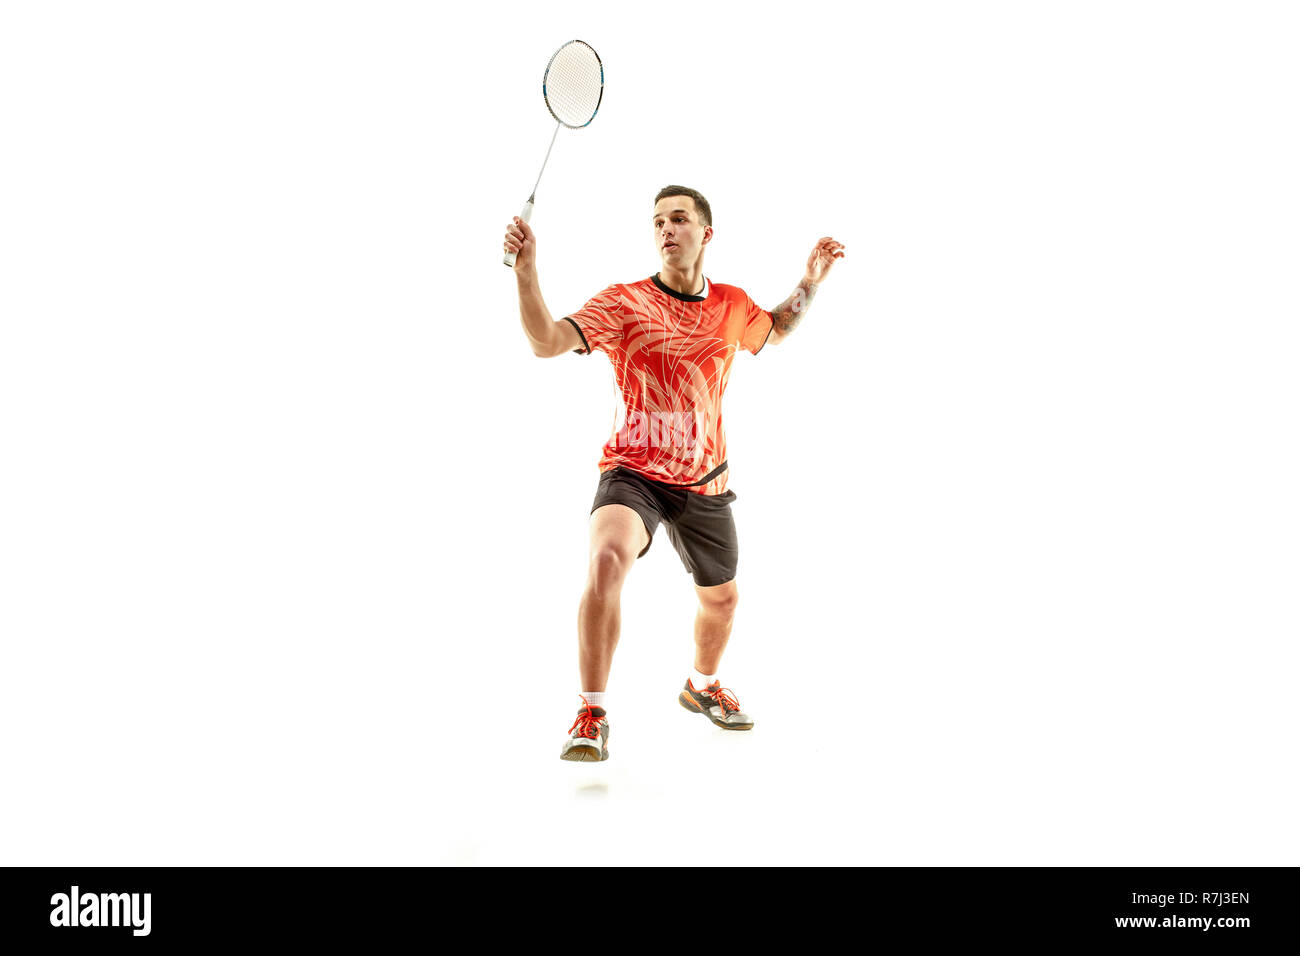 Badminton jump man racket Banque d'images détourées - Alamy